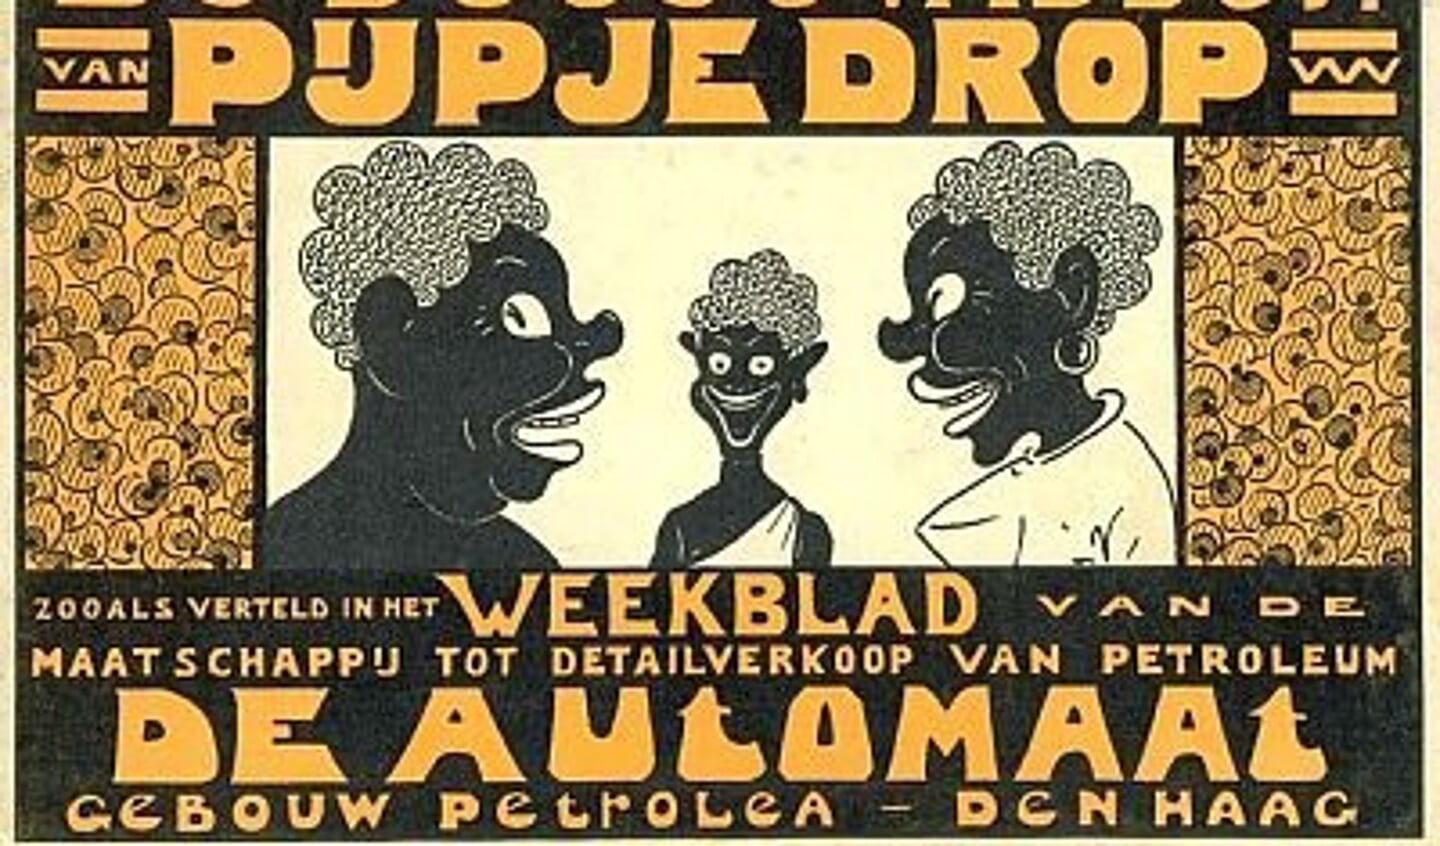 Het krantje bevatte naast reclame ook een stripverhaaltje, dat ging over een zwart mannetje, Pijpje Drop geheten.